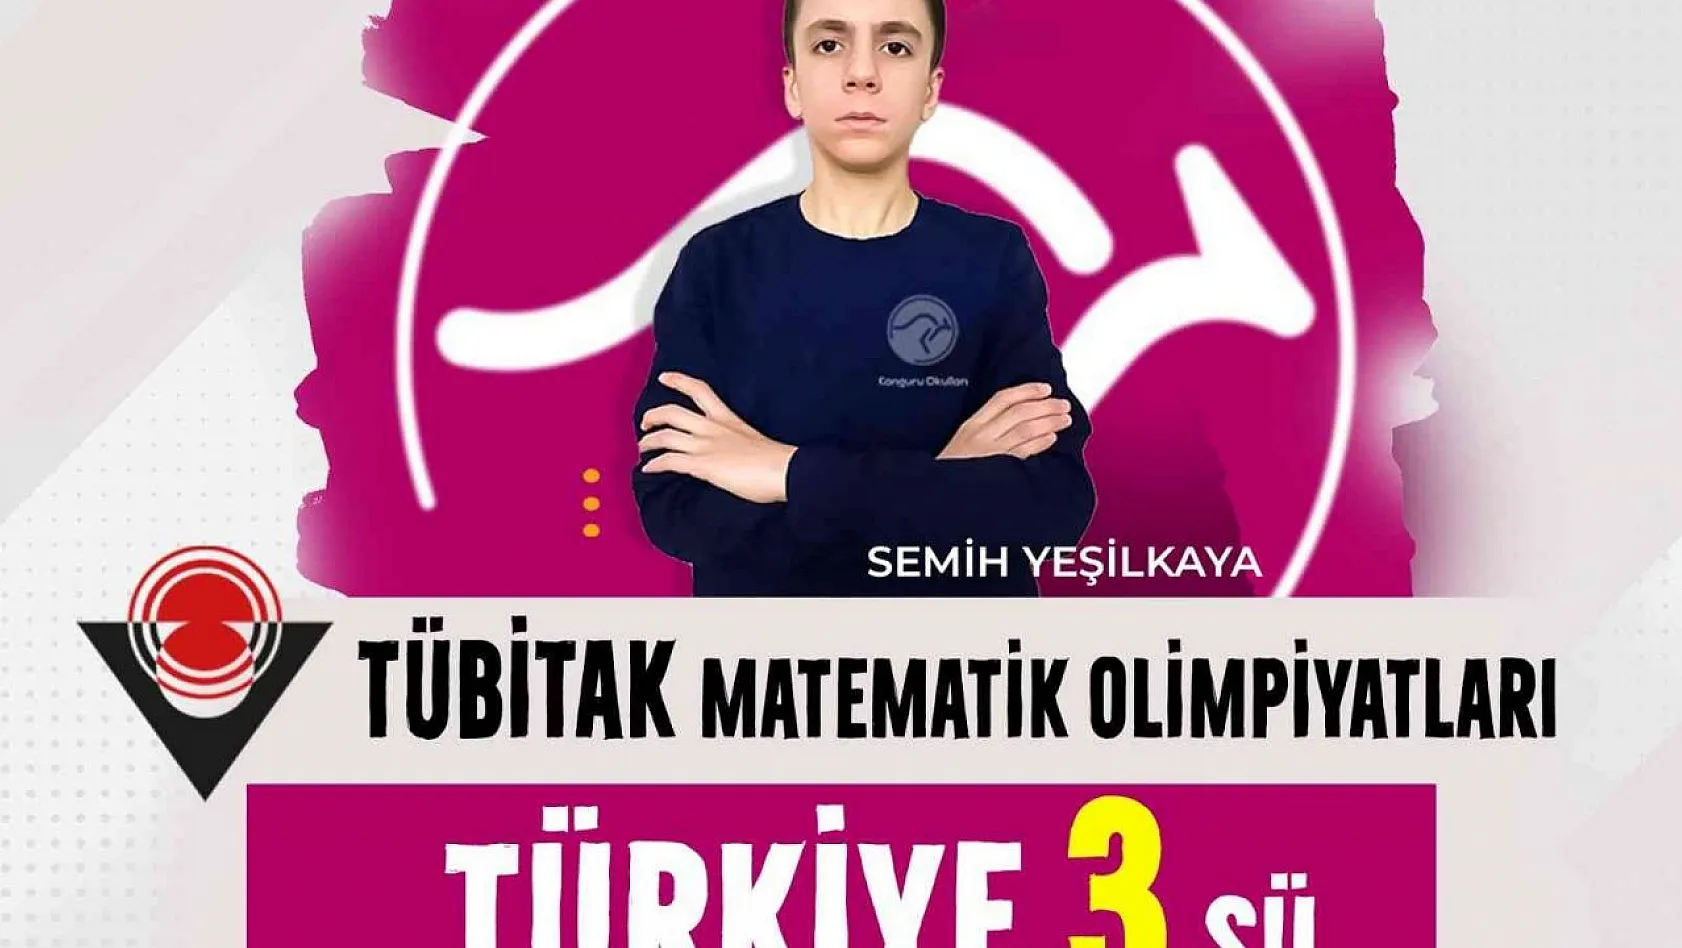 Kanguru Okulları öğrencisi Türkiye 3'üncüsü oldu